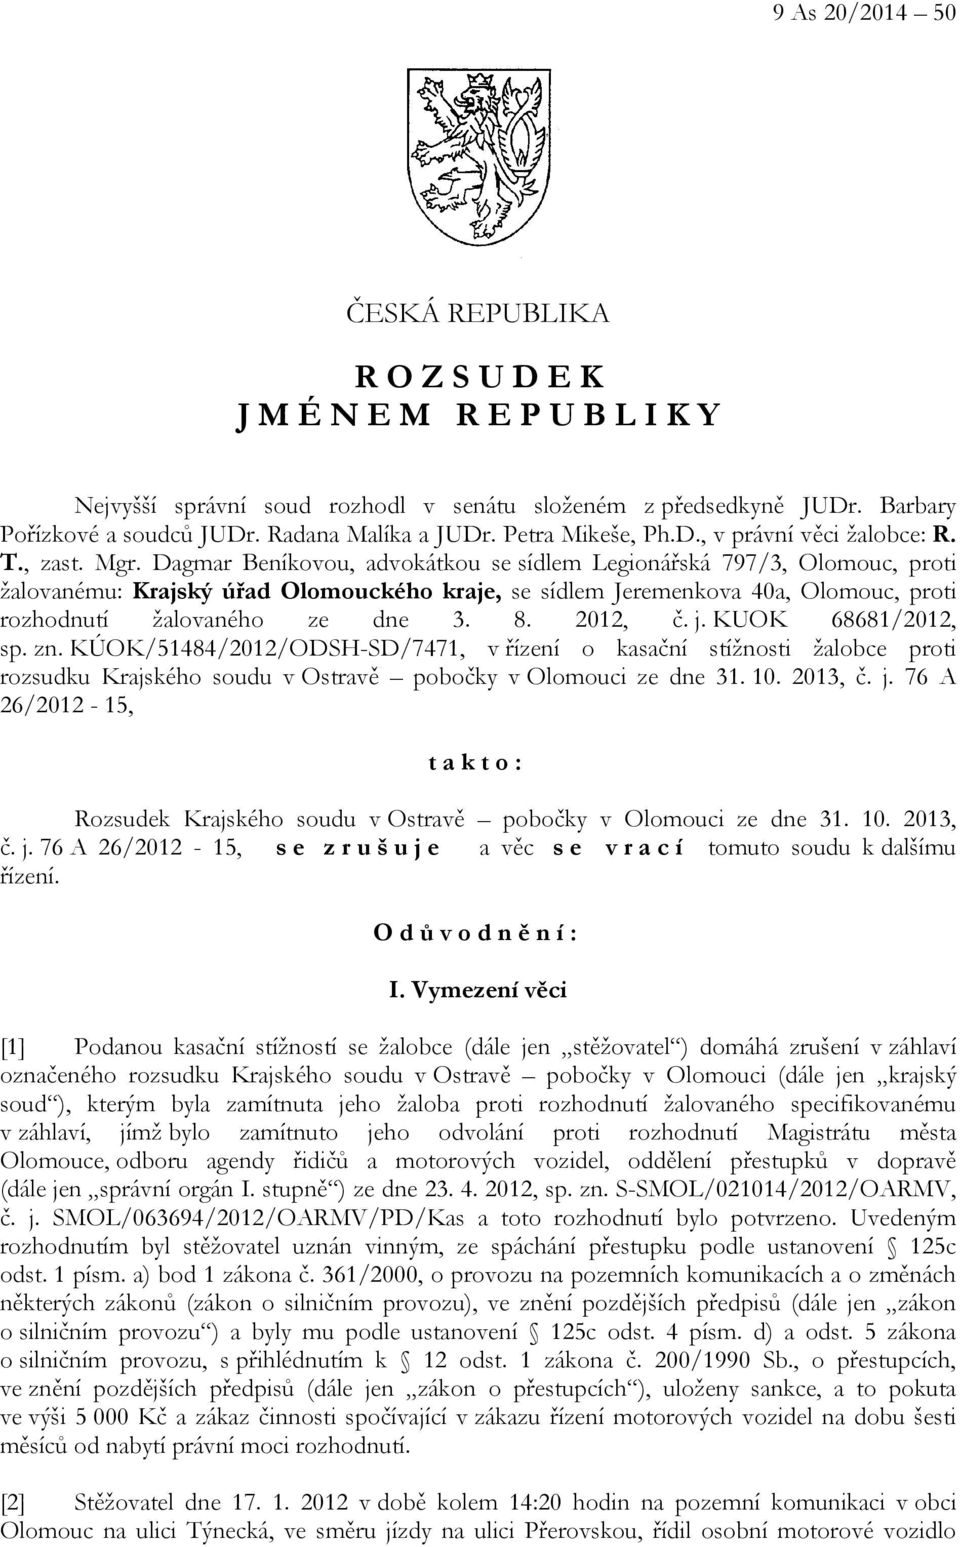 Dagmar Beníkovou, advokátkou se sídlem Legionářská 797/3, Olomouc, proti žalovanému: Krajský úřad Olomouckého kraje, se sídlem Jeremenkova 40a, Olomouc, proti rozhodnutí žalovaného ze dne 3. 8.